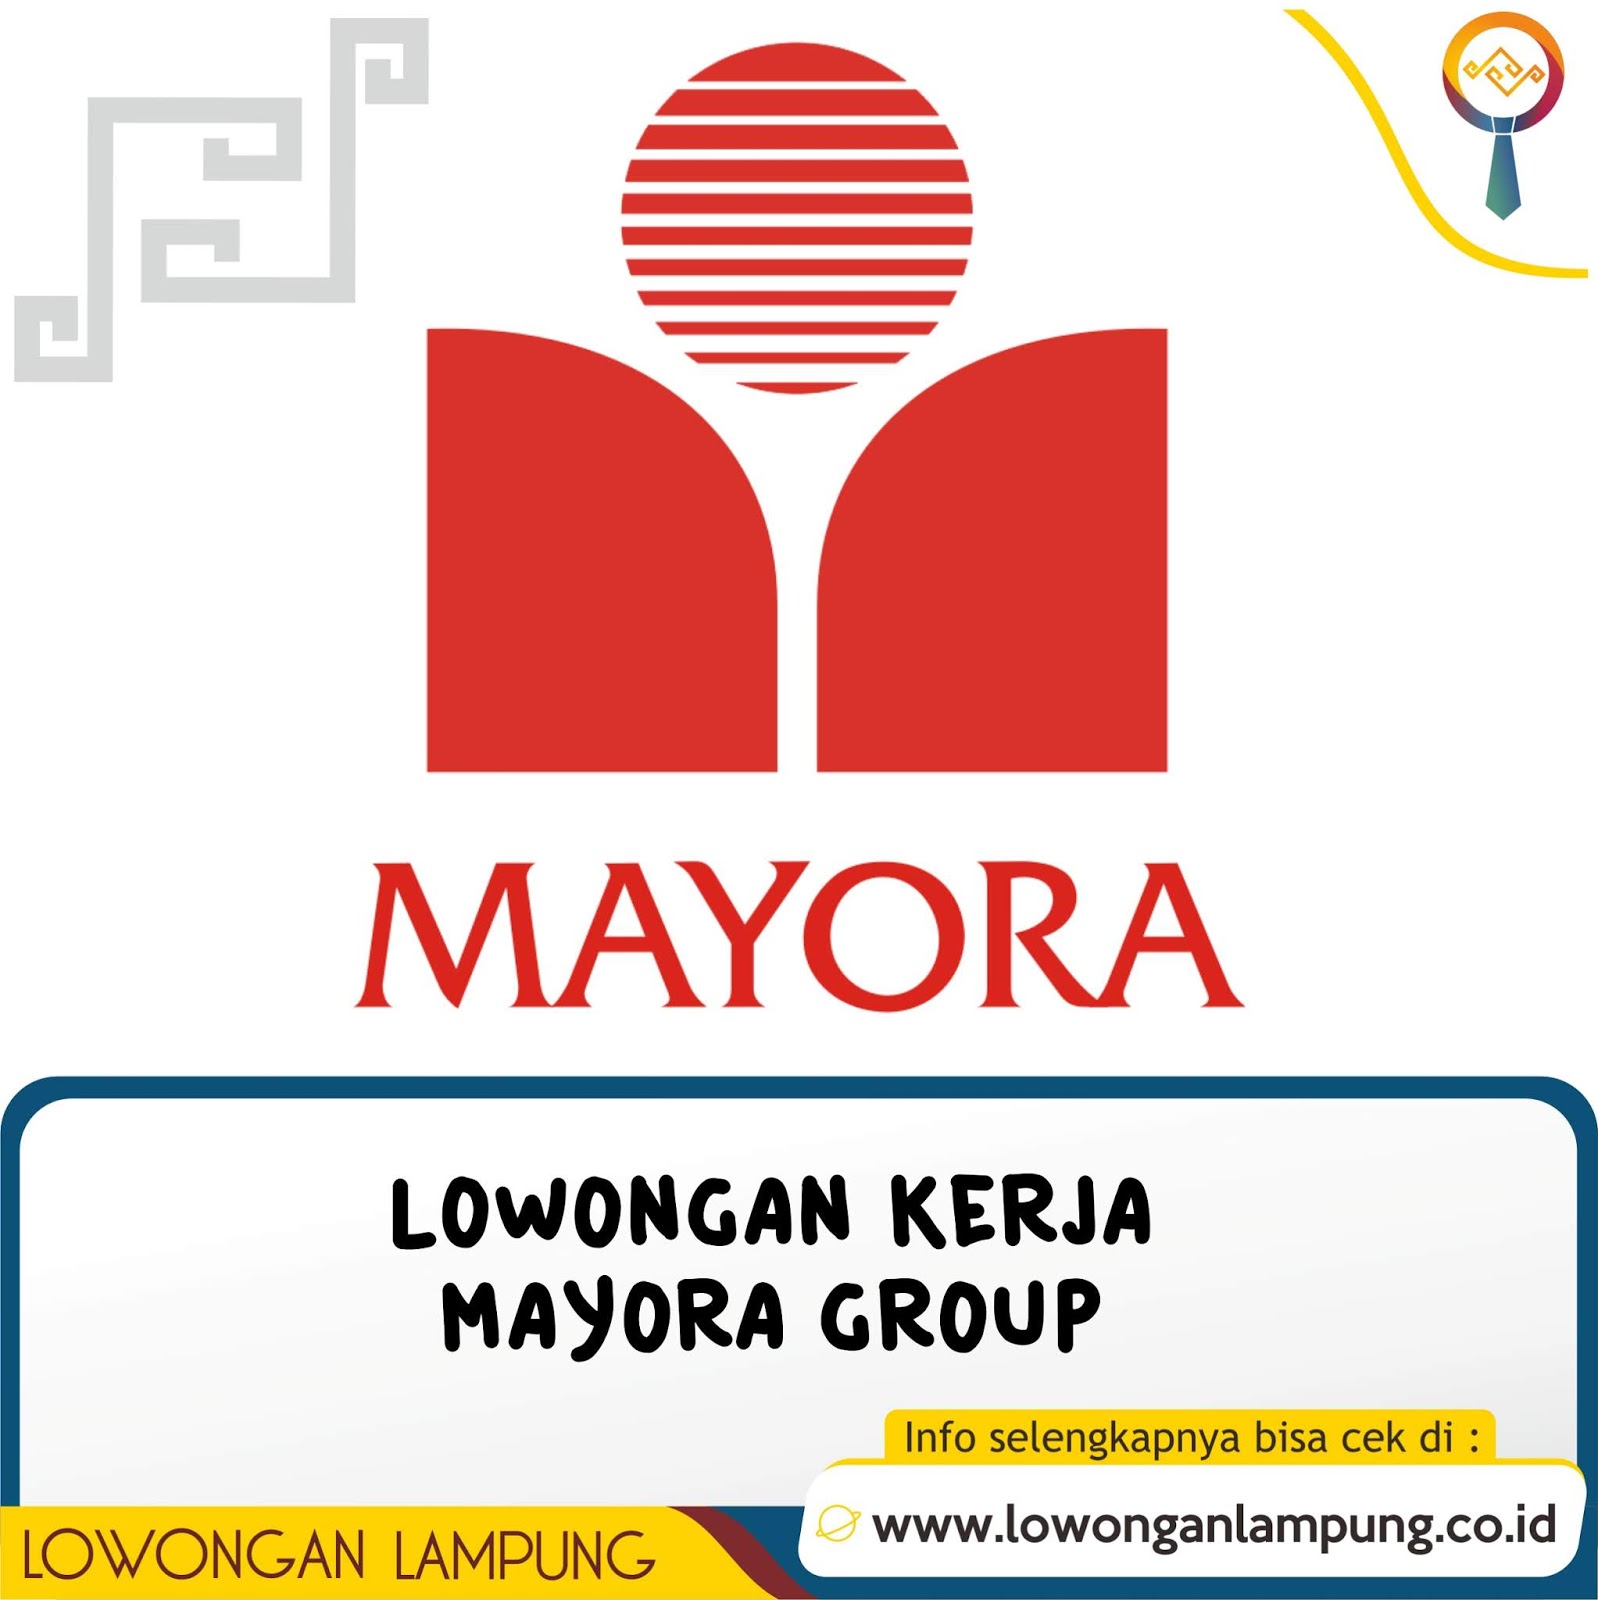 Lowongan Kerja Mayora Group | Lowongan Lampung